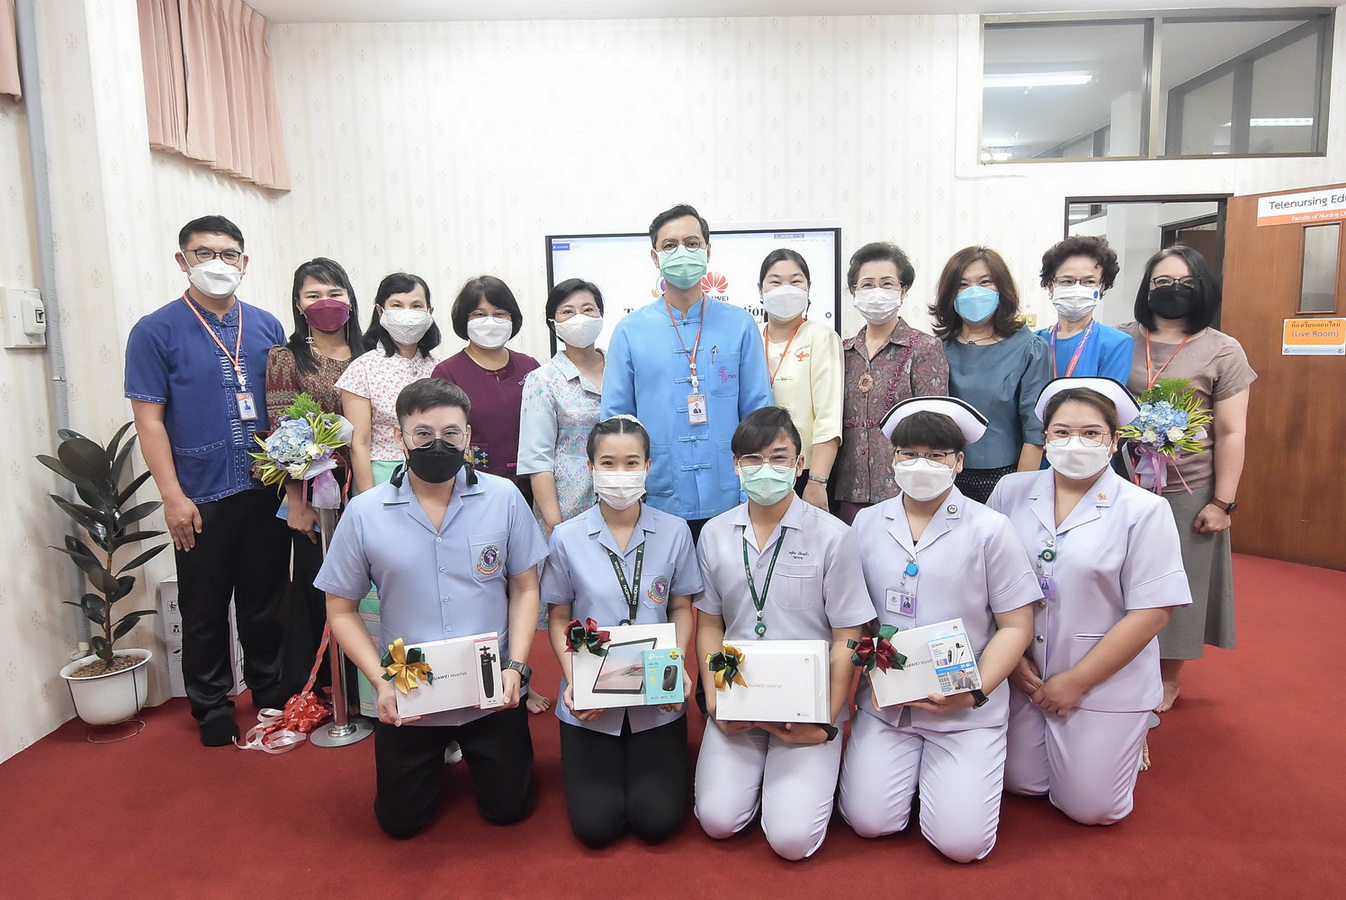 
	คณะพยาบาลศาสตร์ มช. ริเริ่มนำ Telenursing Education ใช้ในกระบวนวิชาฝึกปฏิบัติระดับบัณฑิตศึกษาเป็นแห่งแรกของไทย
